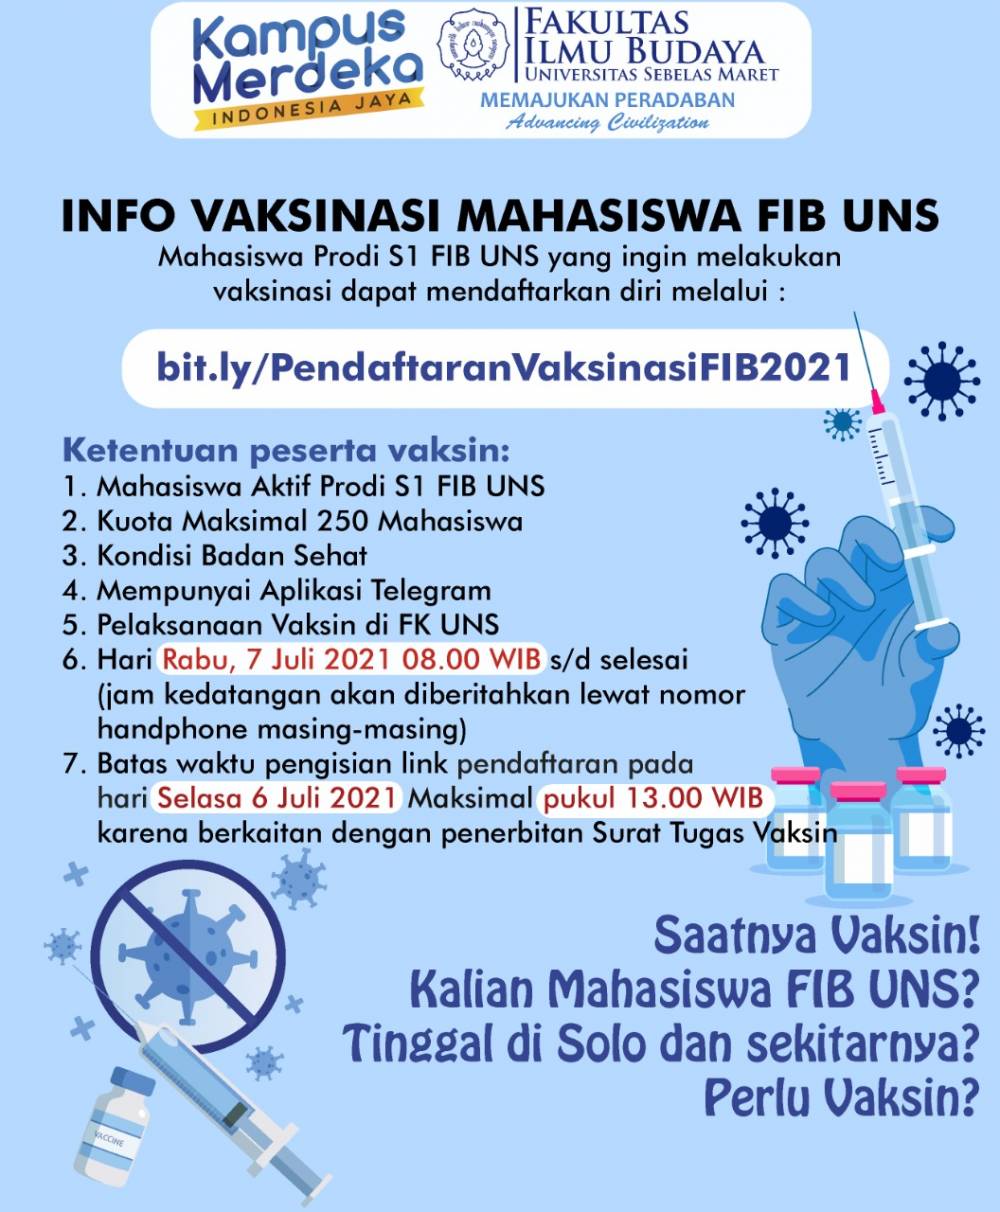 Info Vaksinasi Mahasiswa FIB UNS